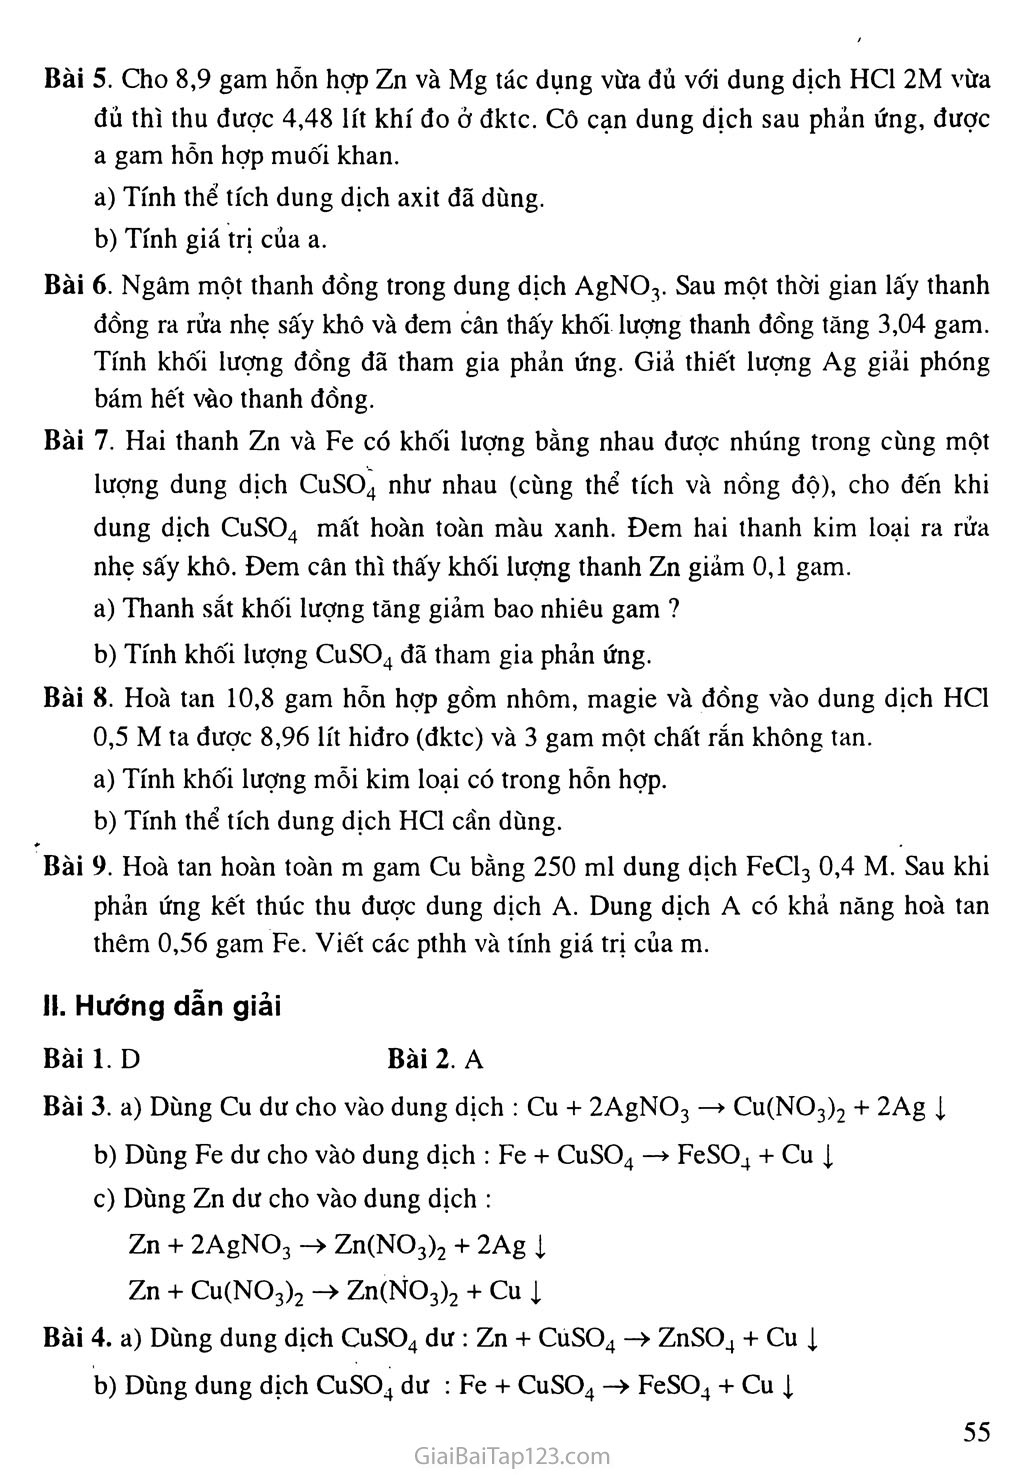 Bài 17: Dãy hoạt động hóa học của kim loại trang 3